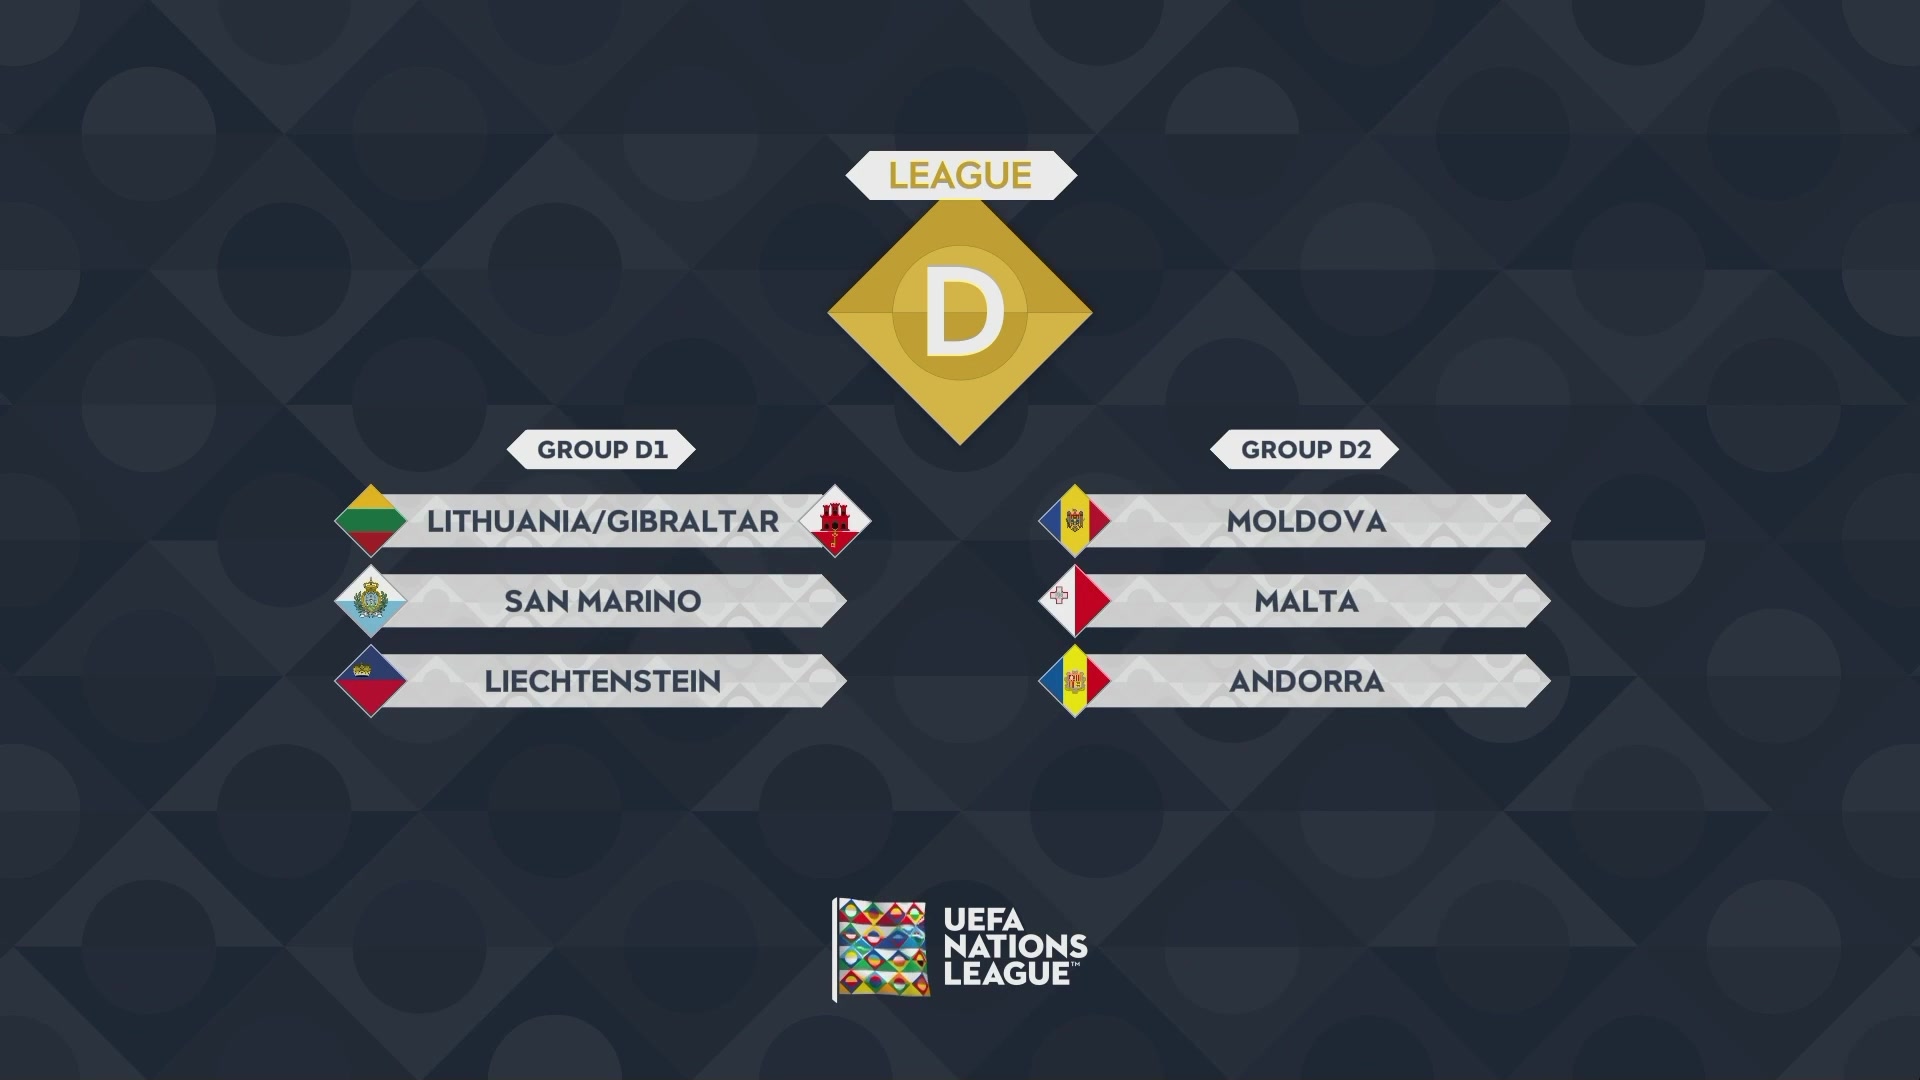 欧国联ABCD级分组情况，意大利比利时法国同组 英格兰掉入B级别